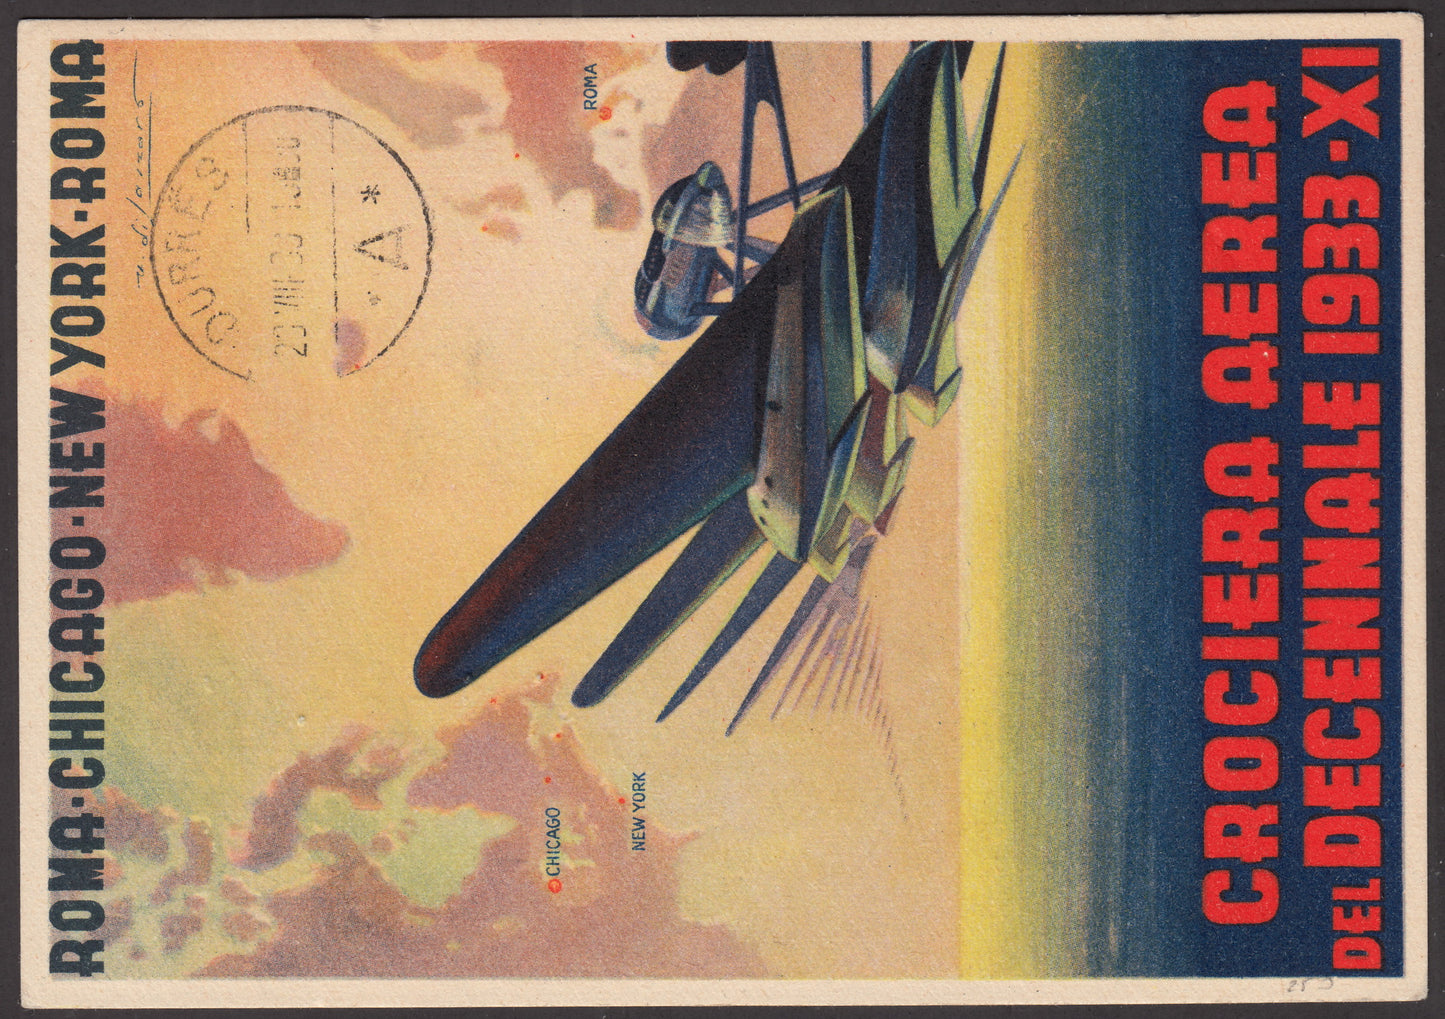 1933 - Crociera del Decennale, cartolina postale via aerea con Giochi Universitari c. 10 bruno + c. 20 carminio + c. 50 violetto (41/43)